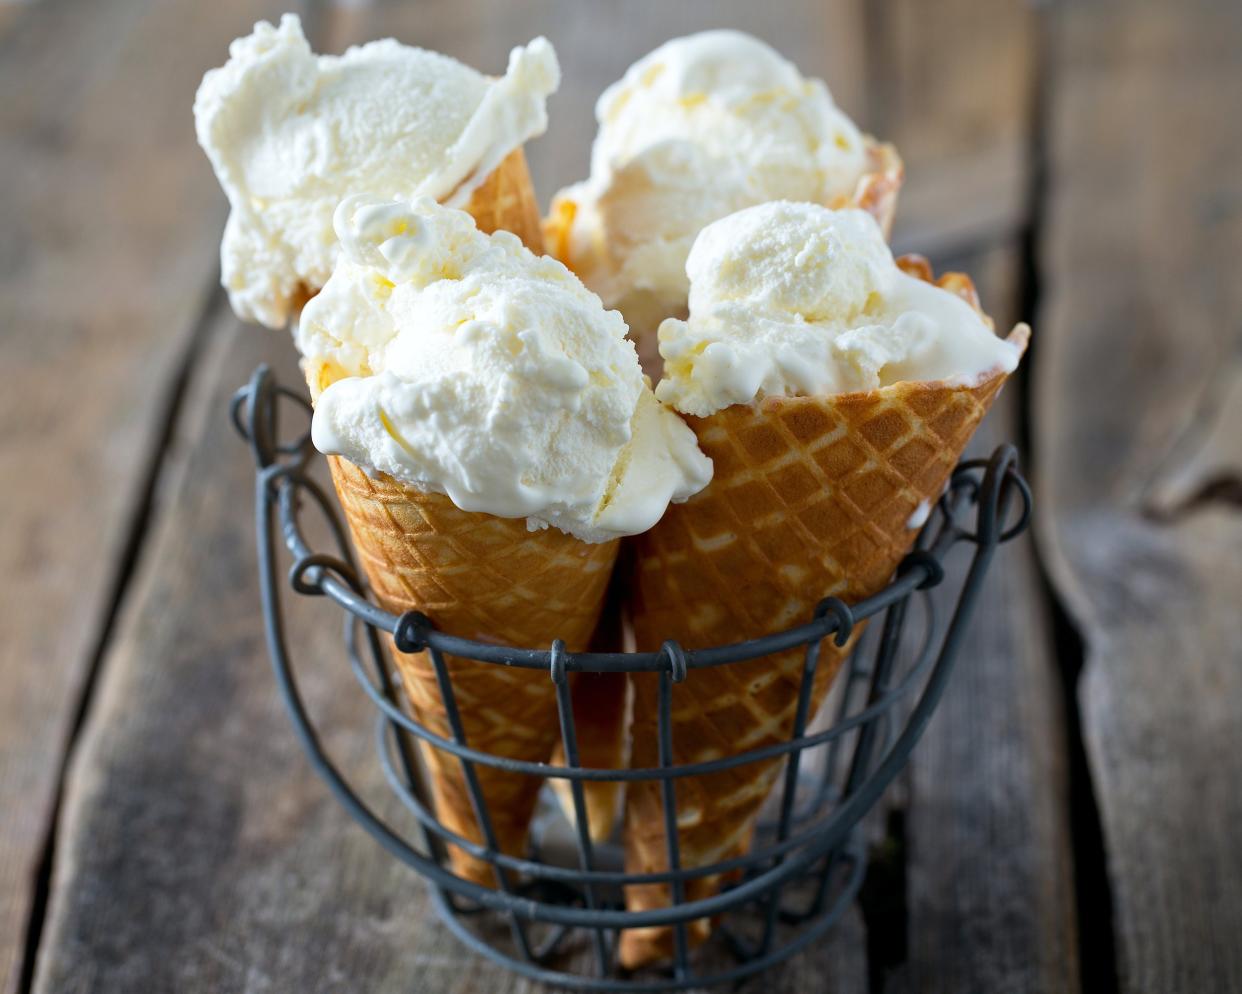 vanilla ice cream cones on wooden surface